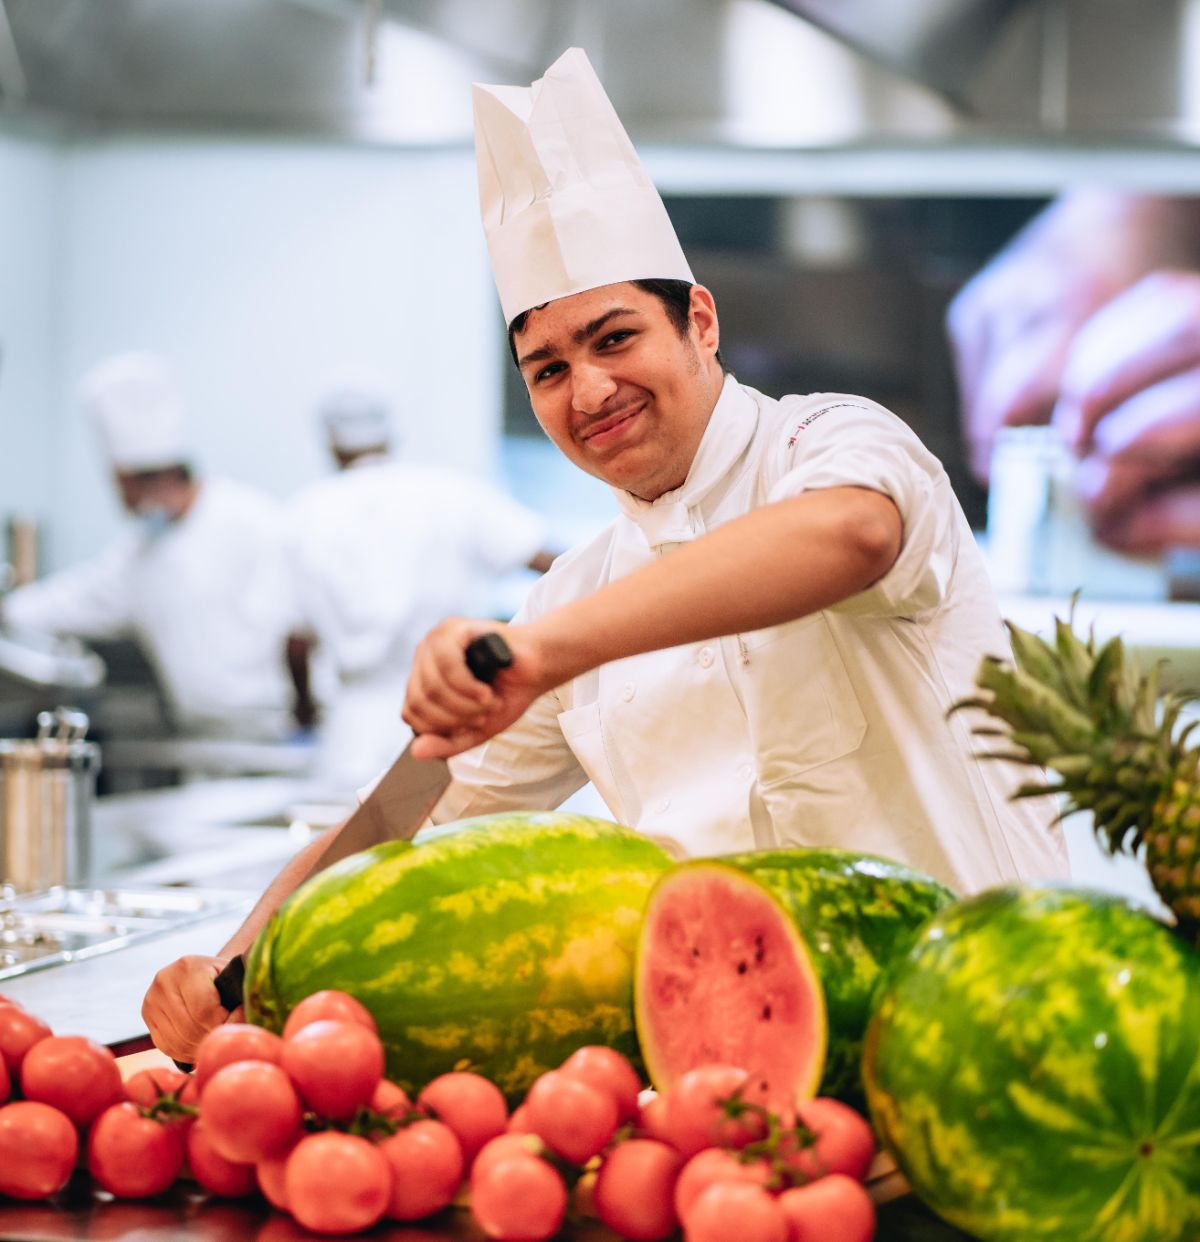 Koch in Ausbildung schneidet mit einem Messer eine grosse Wassermelone